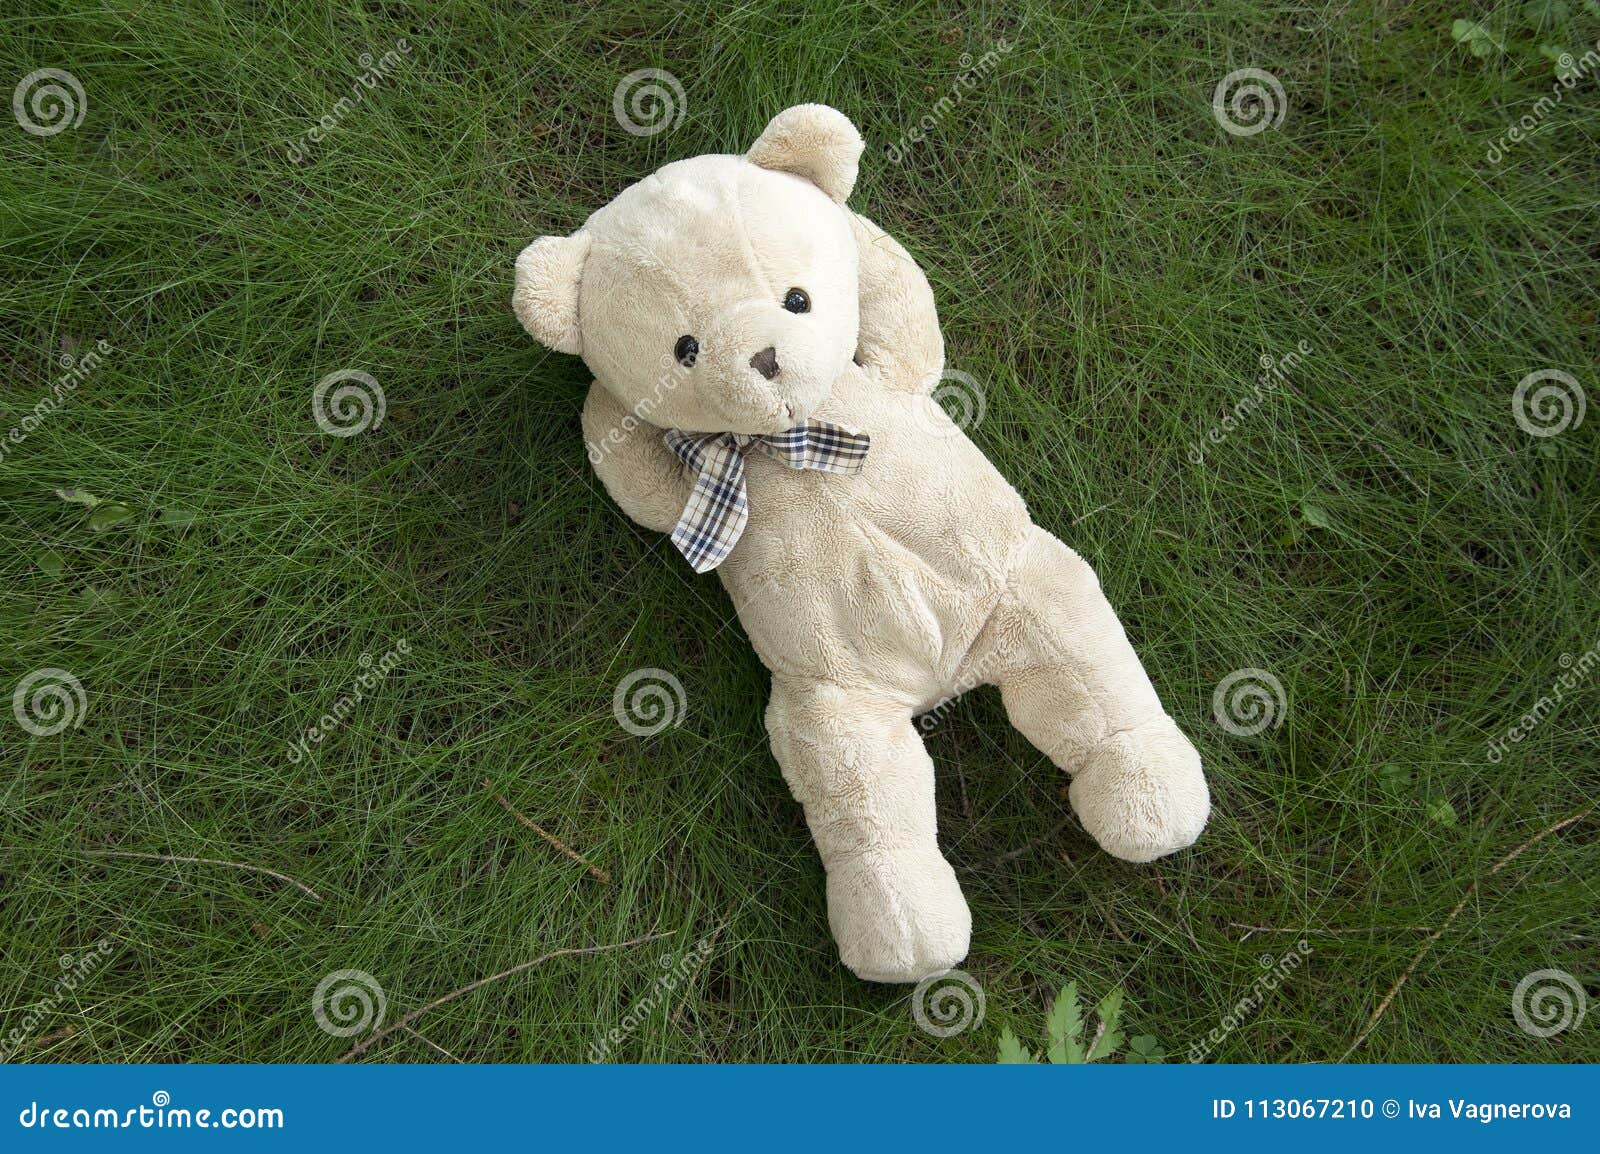 single teddy bear